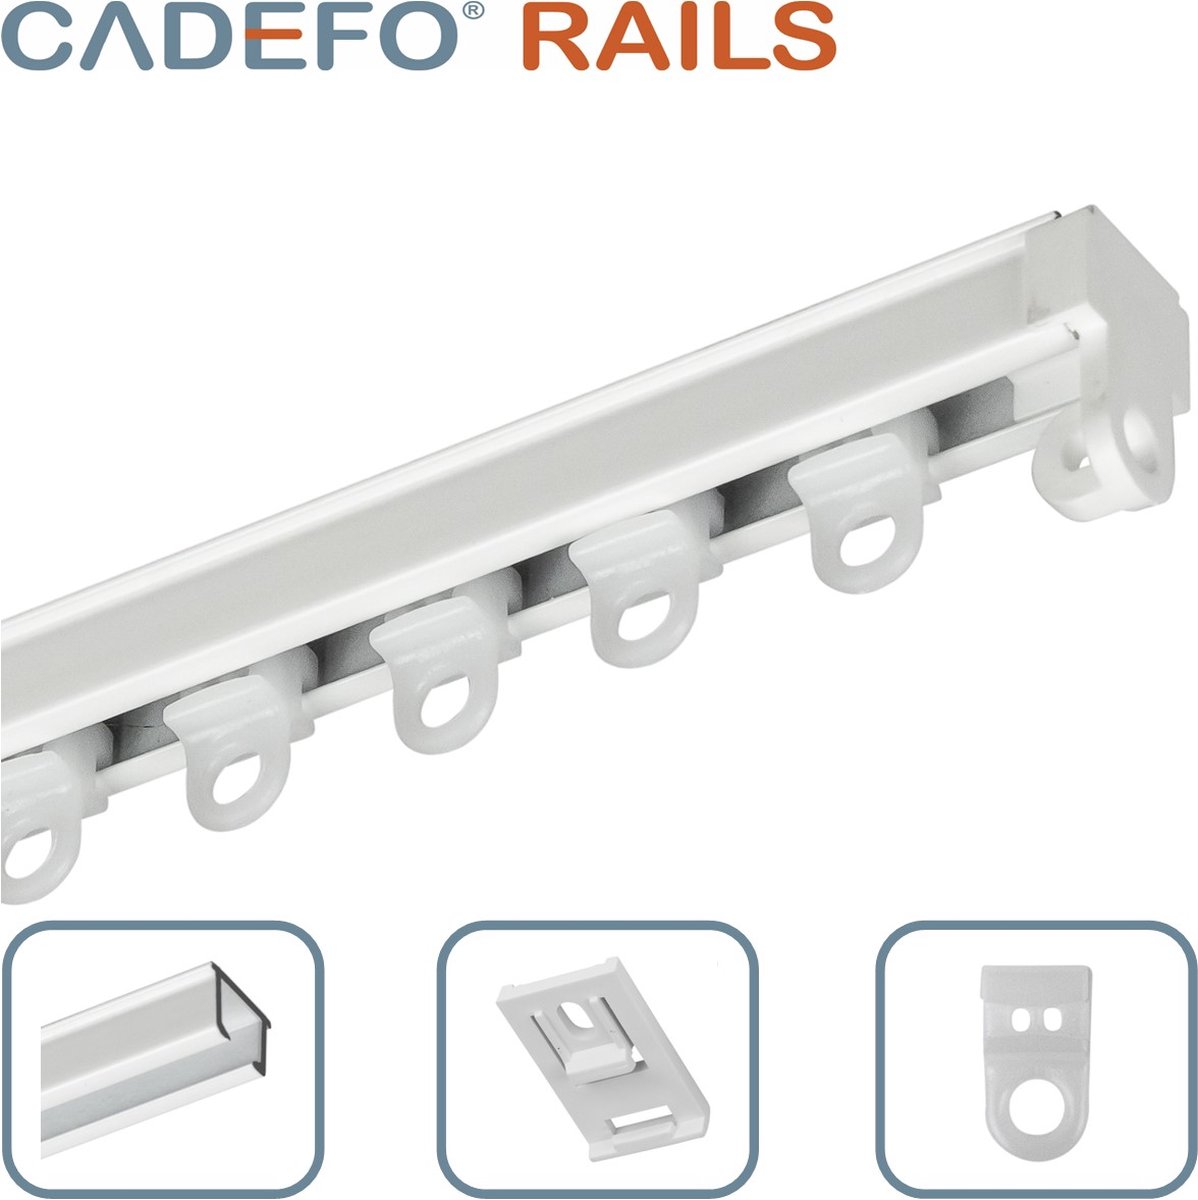 CADEFO RAILS (351 - 400 cm) Gordijnrails - Compleet op maat! - UIT 1 STUK - Leverbaar tot 6 meter - Plafondbevestiging - Lengte 396 cm